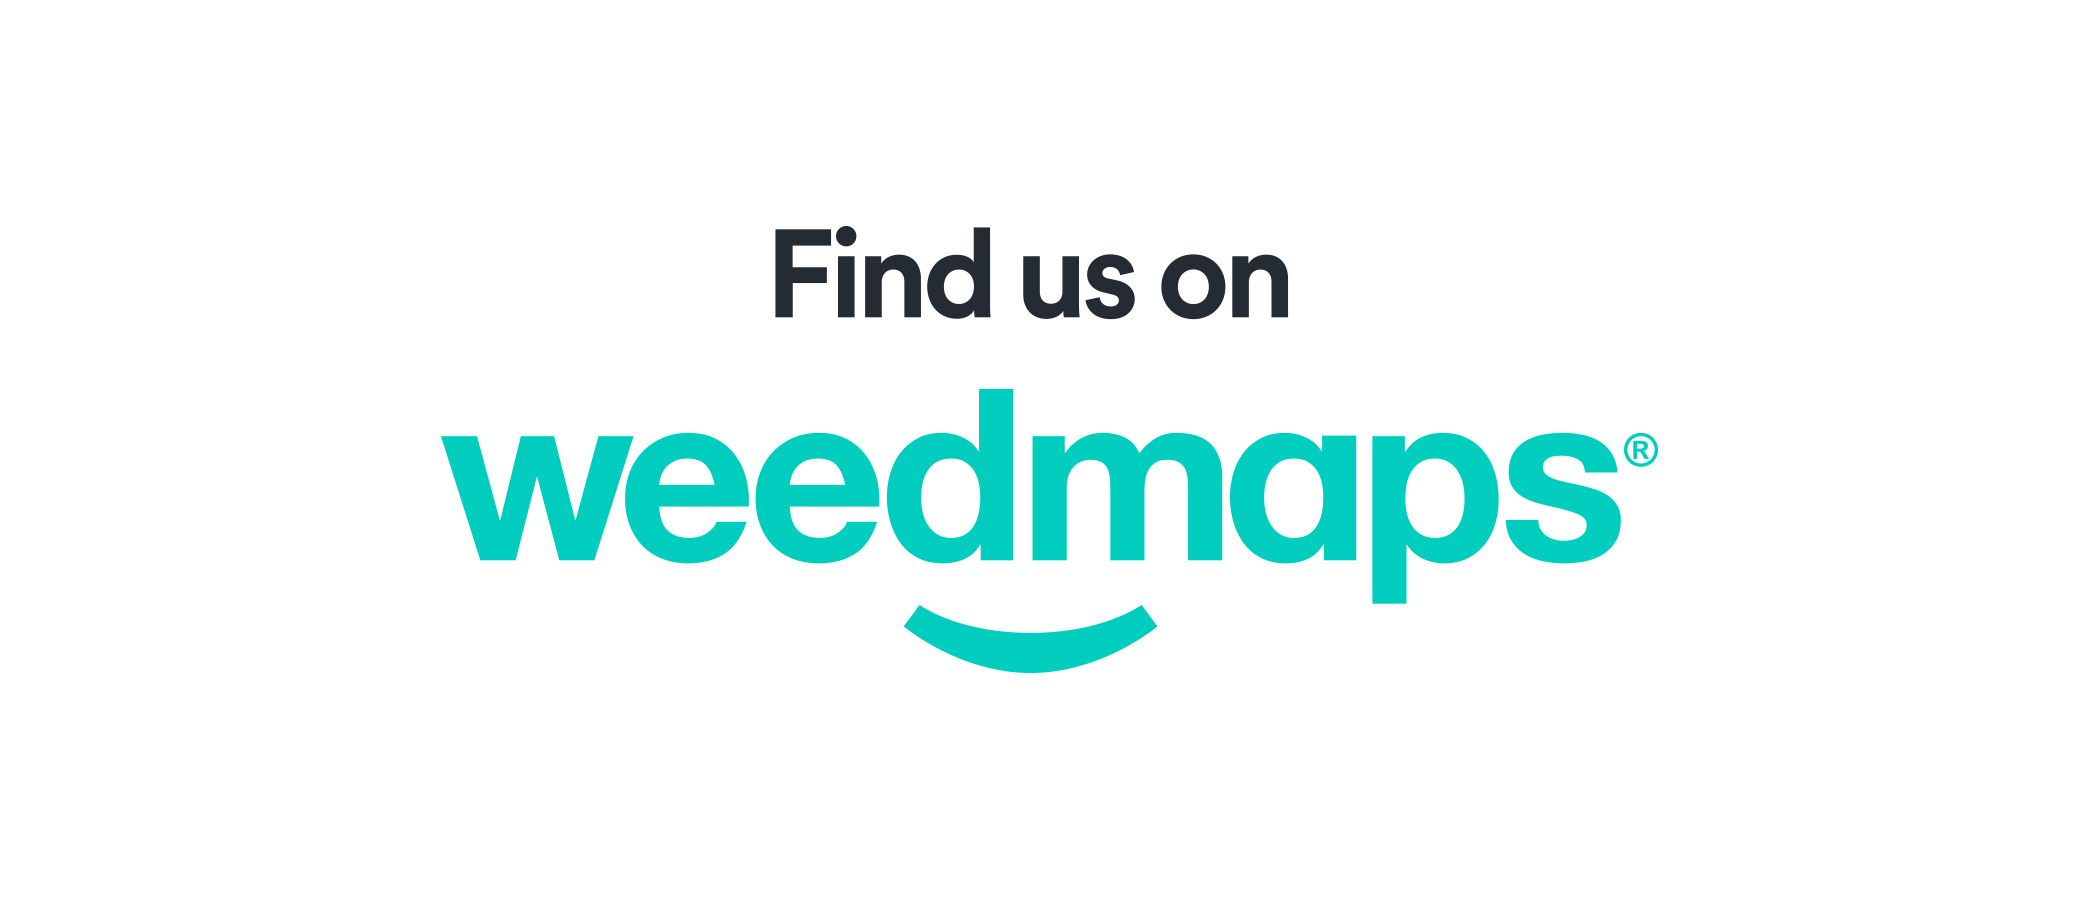 Weedmaps_FindUs_Logo_2020_WhtBgrd